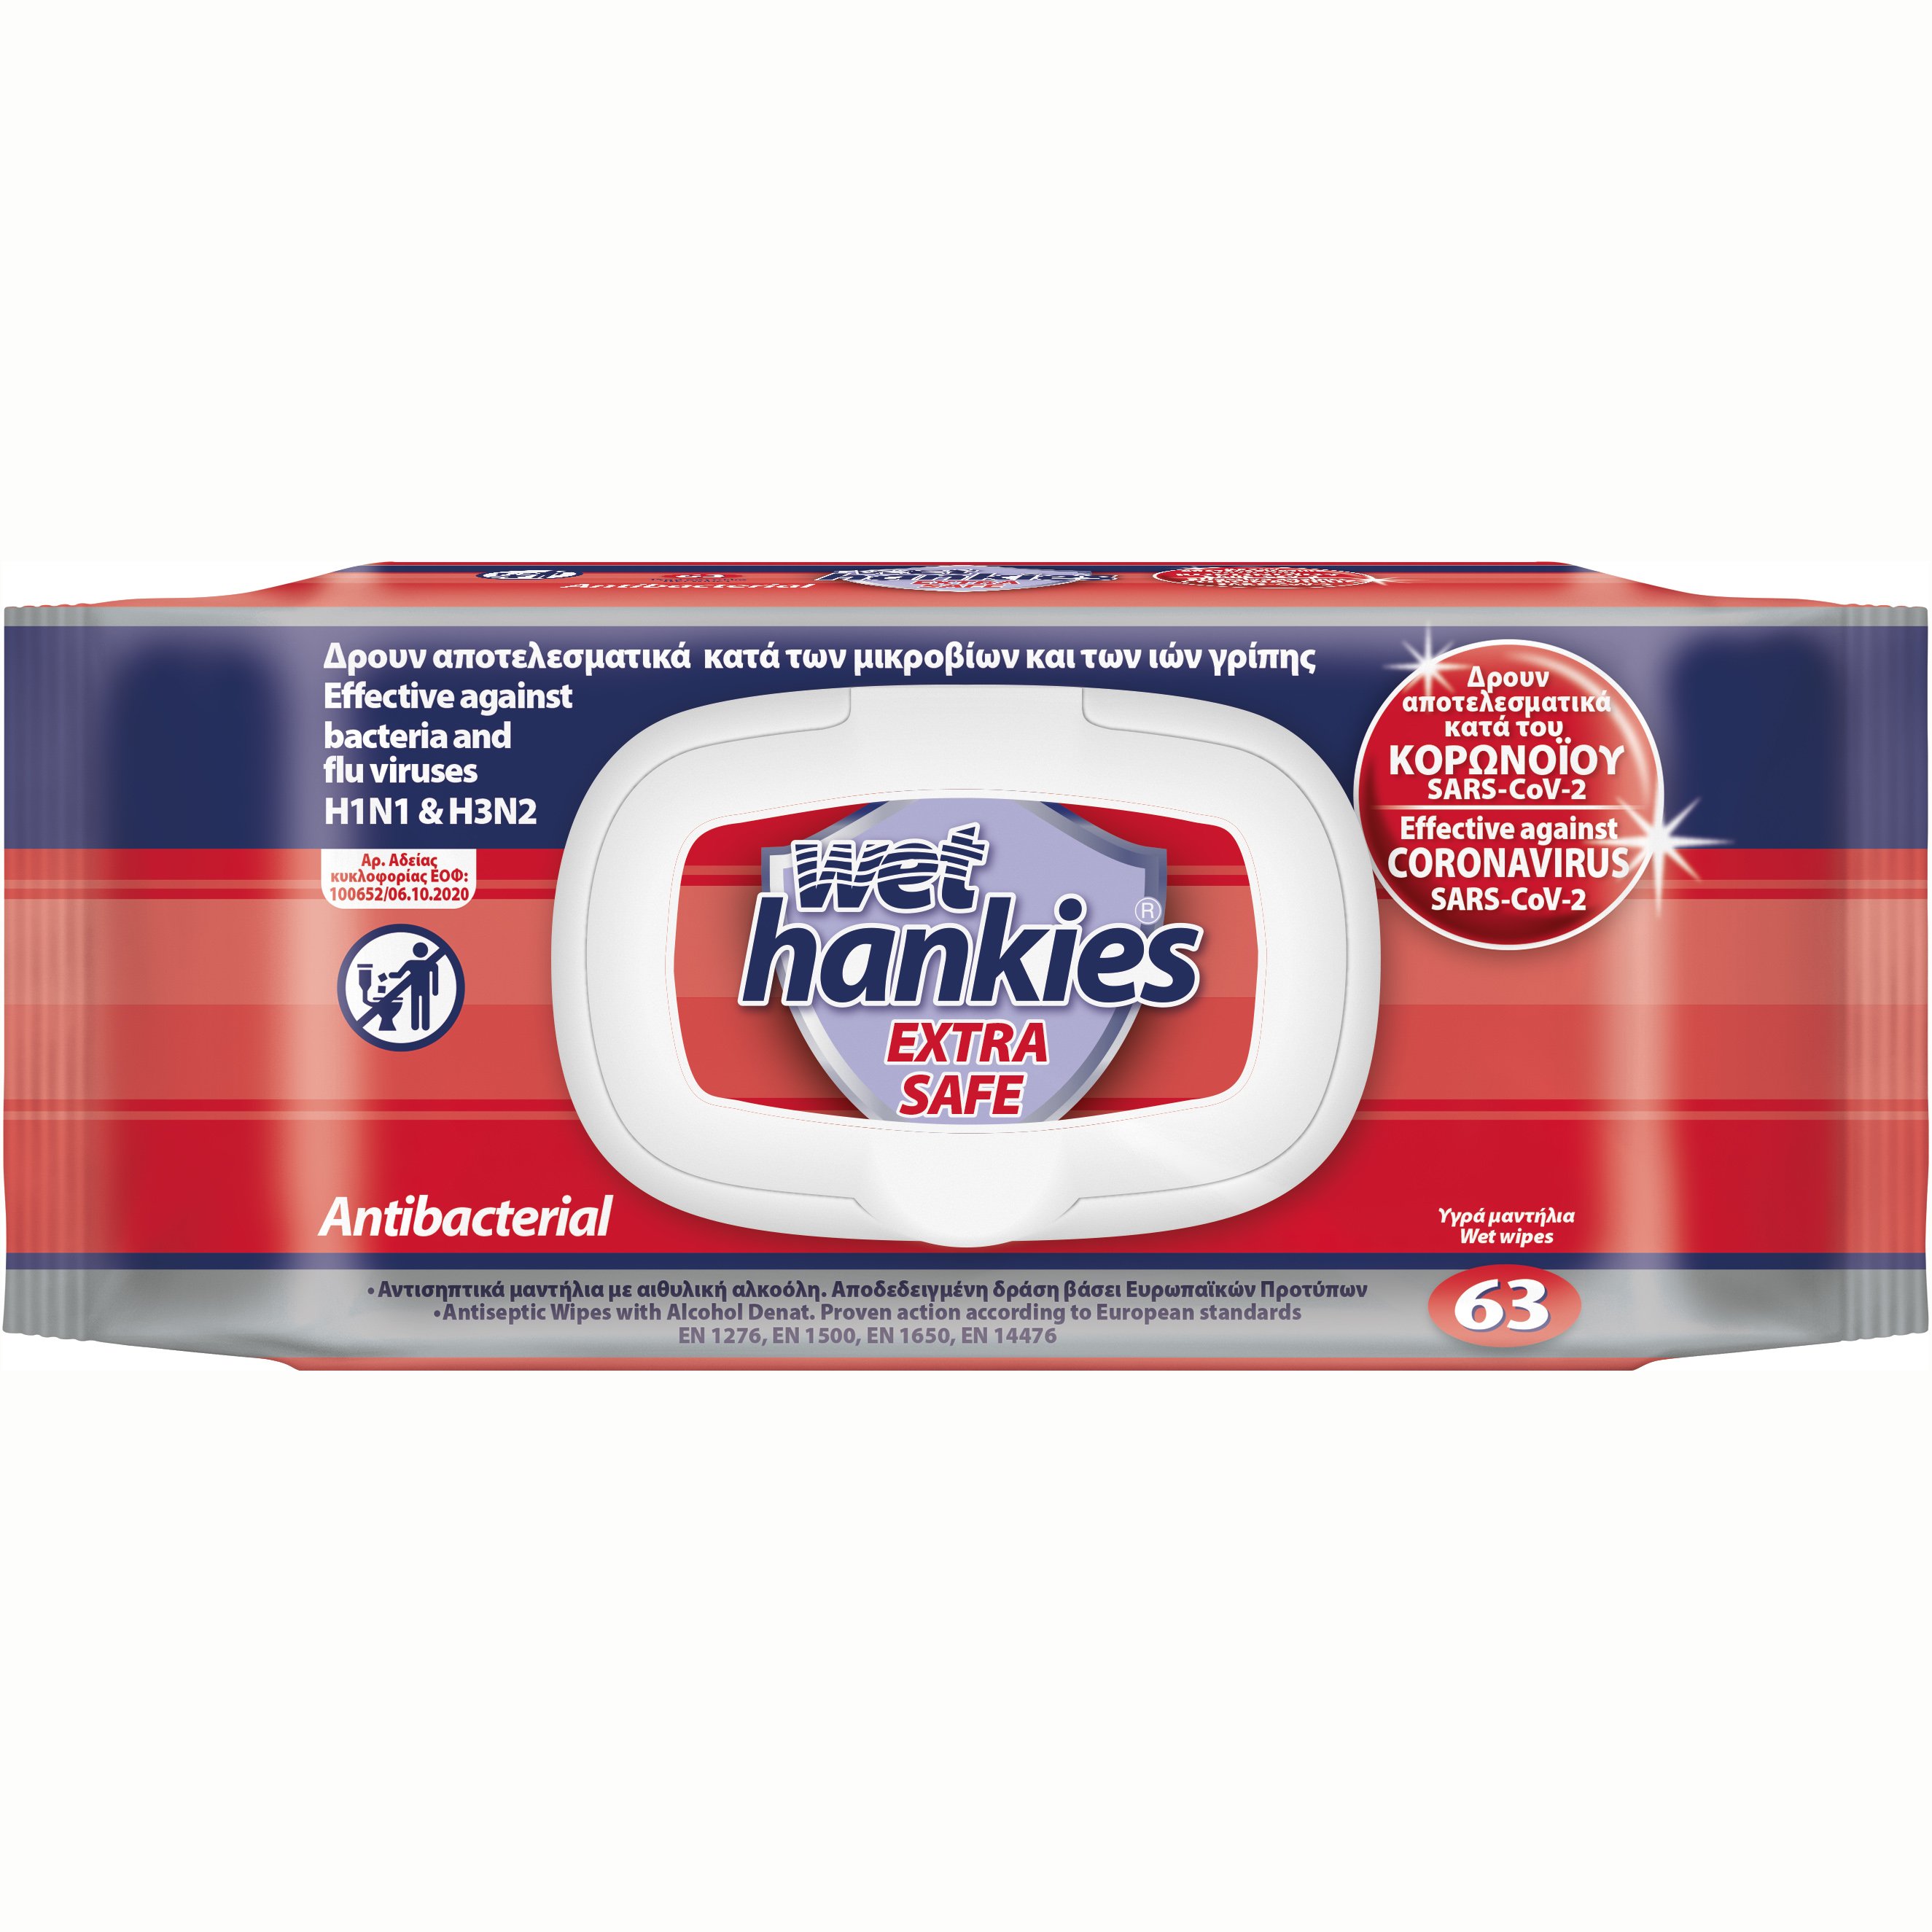 ΜΕΓΑ Wet Hankies Extra Safe Antibacterial Αντισηπτικά Μαντηλάκια που Δρουν Κατά των Μικροβίων & των Ιών Γρίπης 63 Τεμάχια